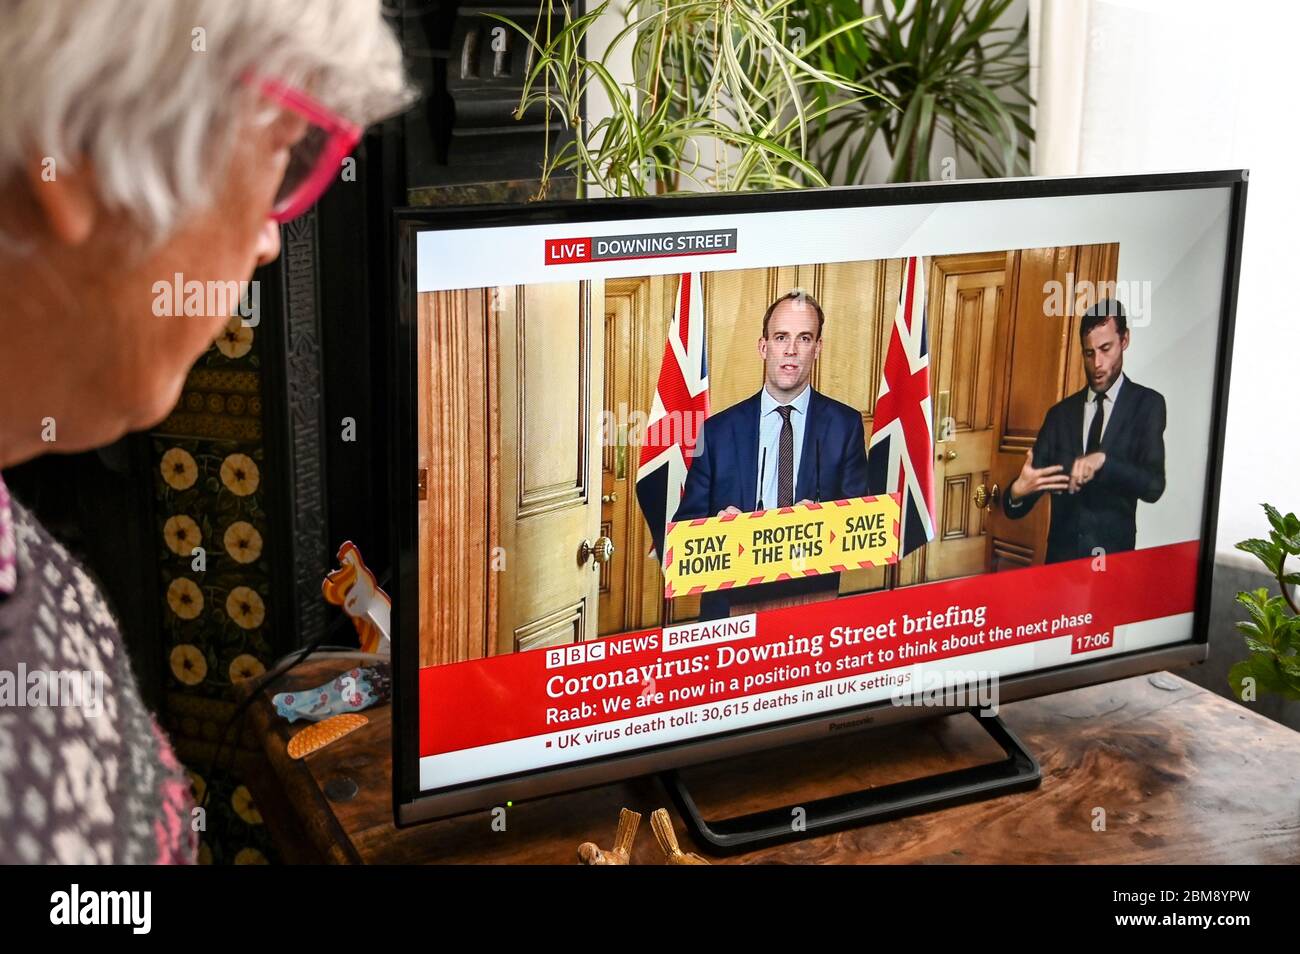 Dominic Raab che dà il briefing quotidiano teletrasmesso di Coronavirus Downing Street, guardato da uno spettatore. Banner "rimanere a casa, proteggere l'NHS, salvare vite". Foto Stock